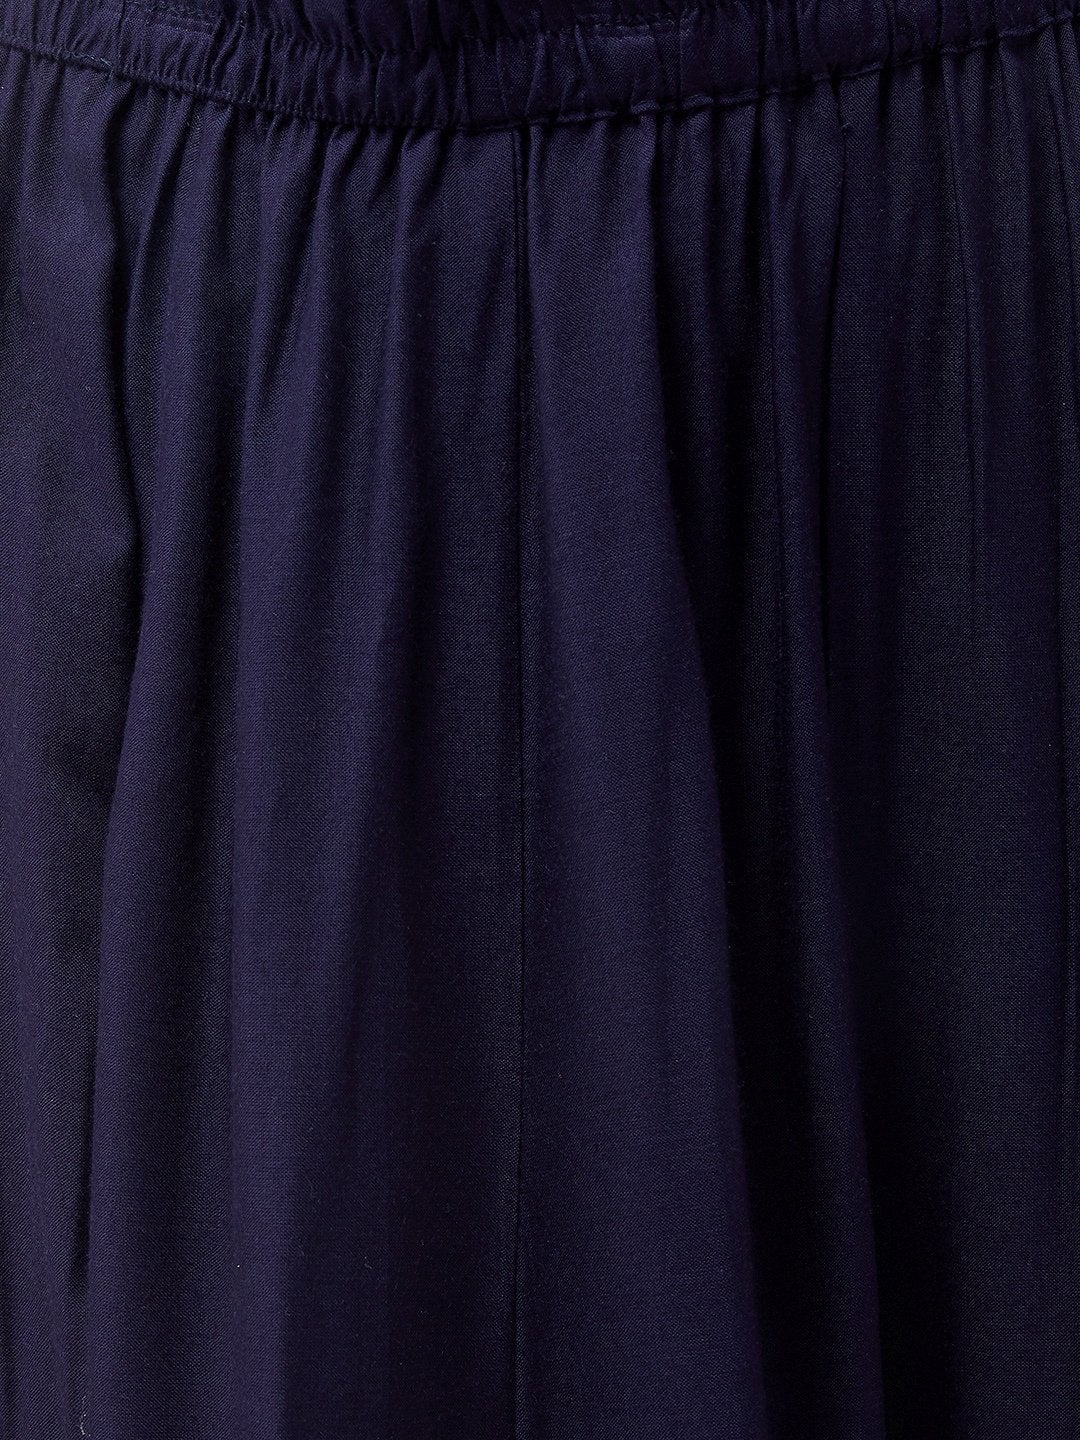 Women's Navy Blue Kurta With Skirt - InWeave